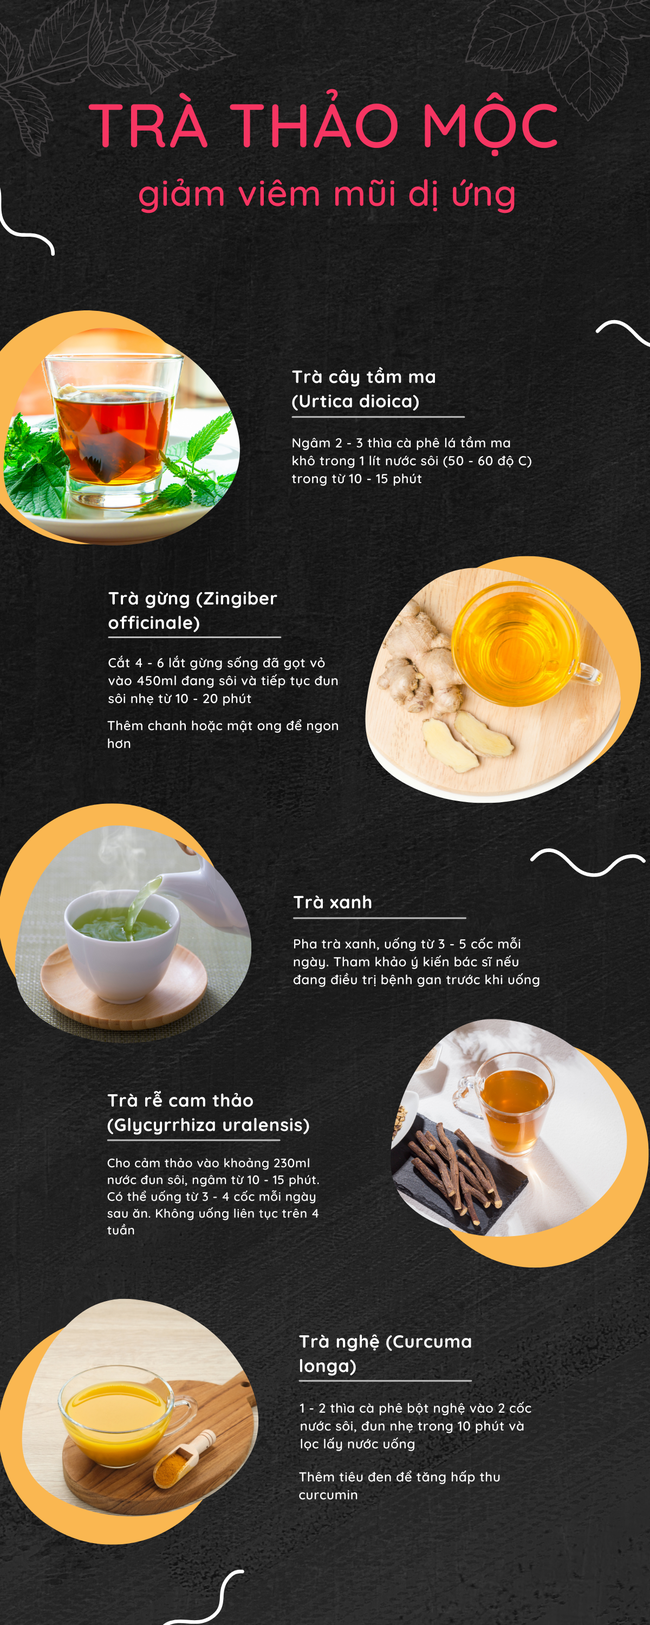 5 loại trà thảo mộc giúp đánh bay viêm mũi dị ứng theo mùa - Ảnh 8.